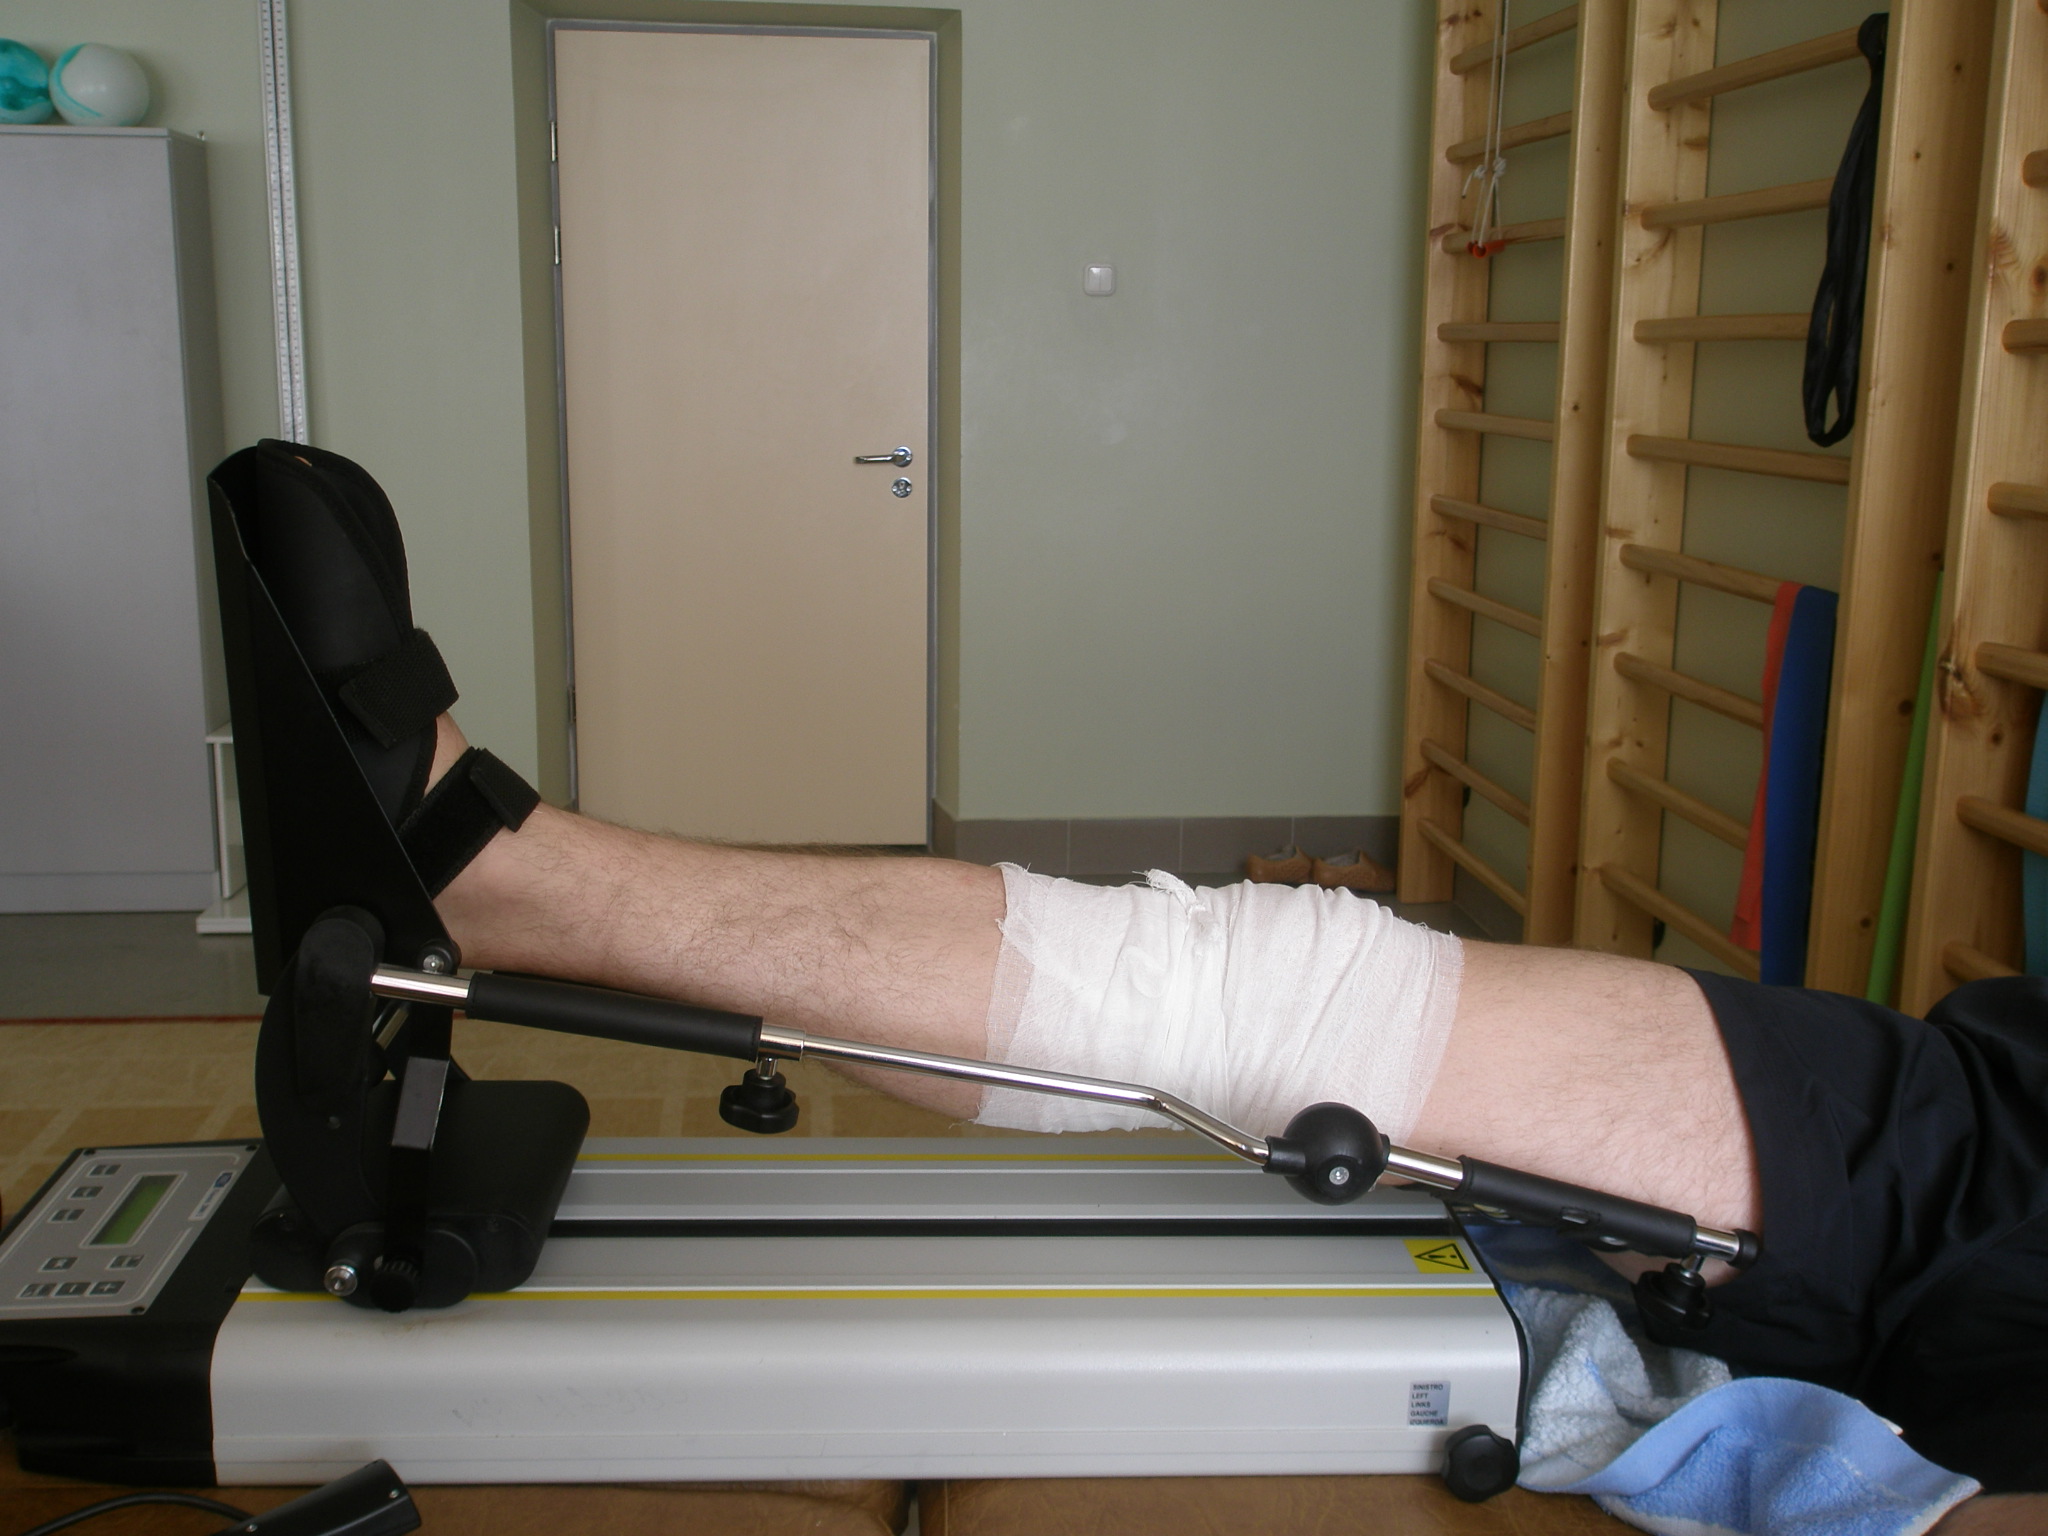 Операция эндопротезирование коленного сустава реабилитация. Реабилитация после эндопротезирования эндопротезирования коленного. Аппарат для реабилитации коленного сустава после эндопротезирования. Послеоперационная реабилитация коленного сустава. Реабилитация после коленного сустава.